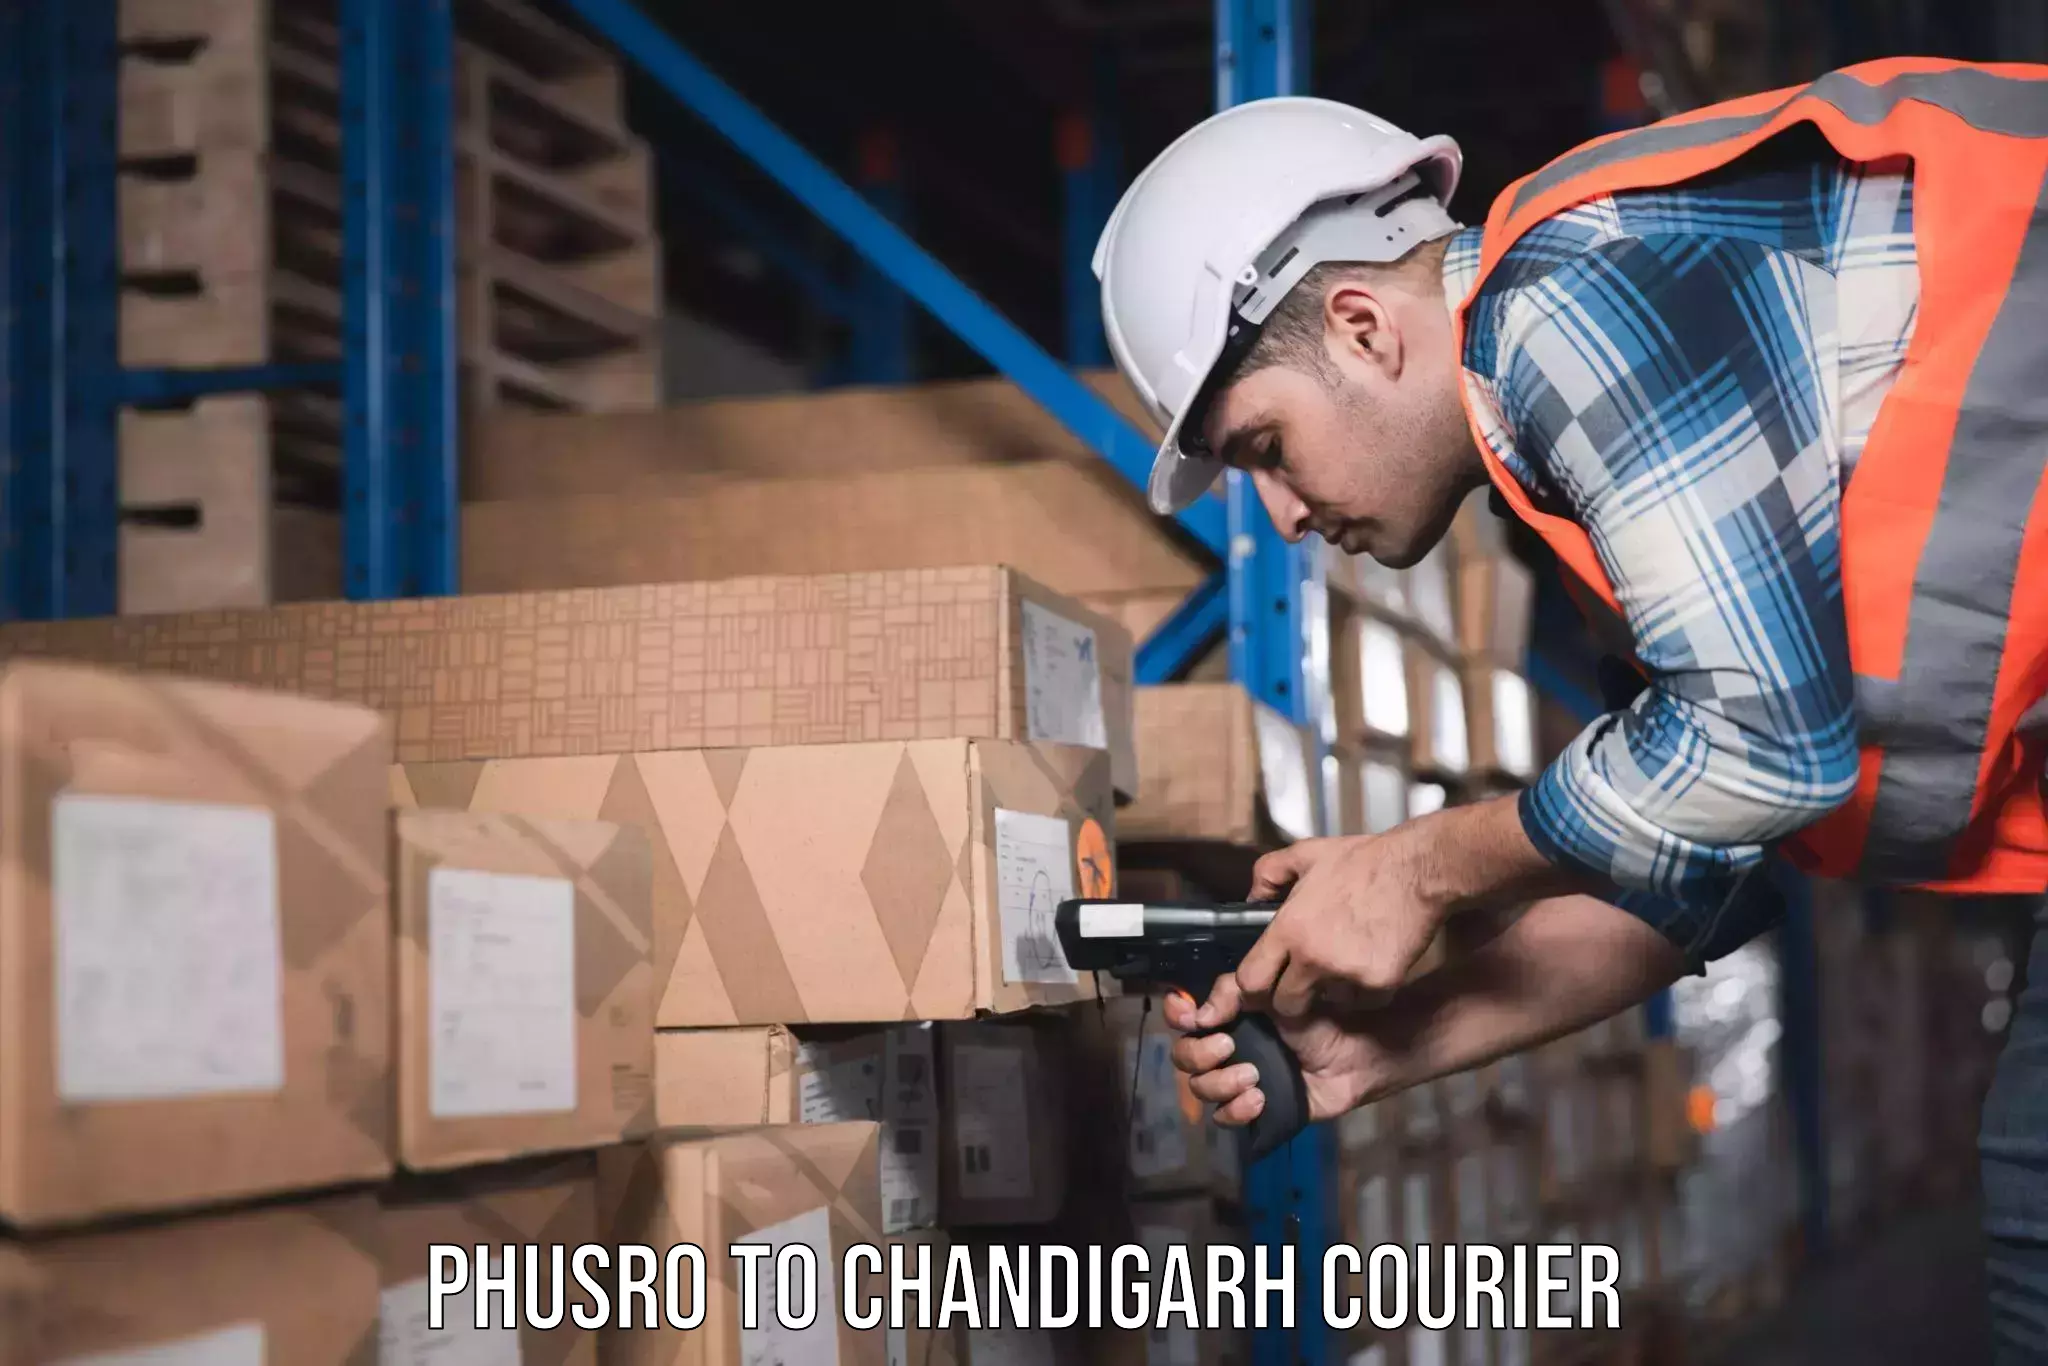 Furniture moving experts Phusro to Chandigarh